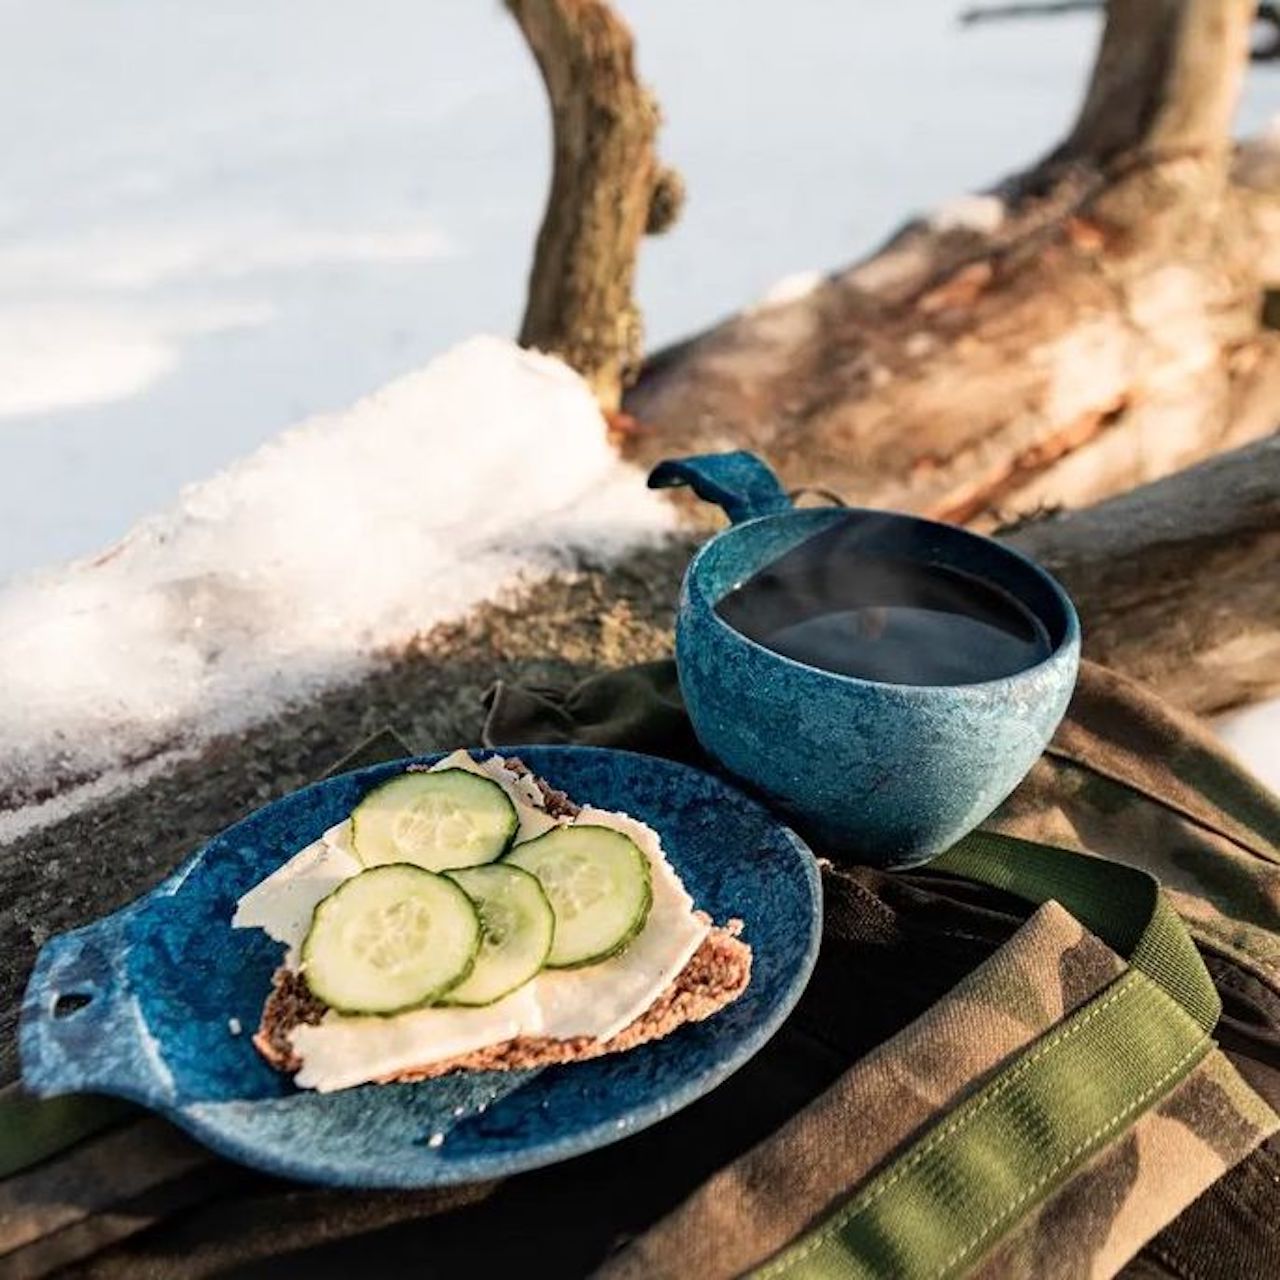 Финская обувь для охоты: качество, комфорт, надежность